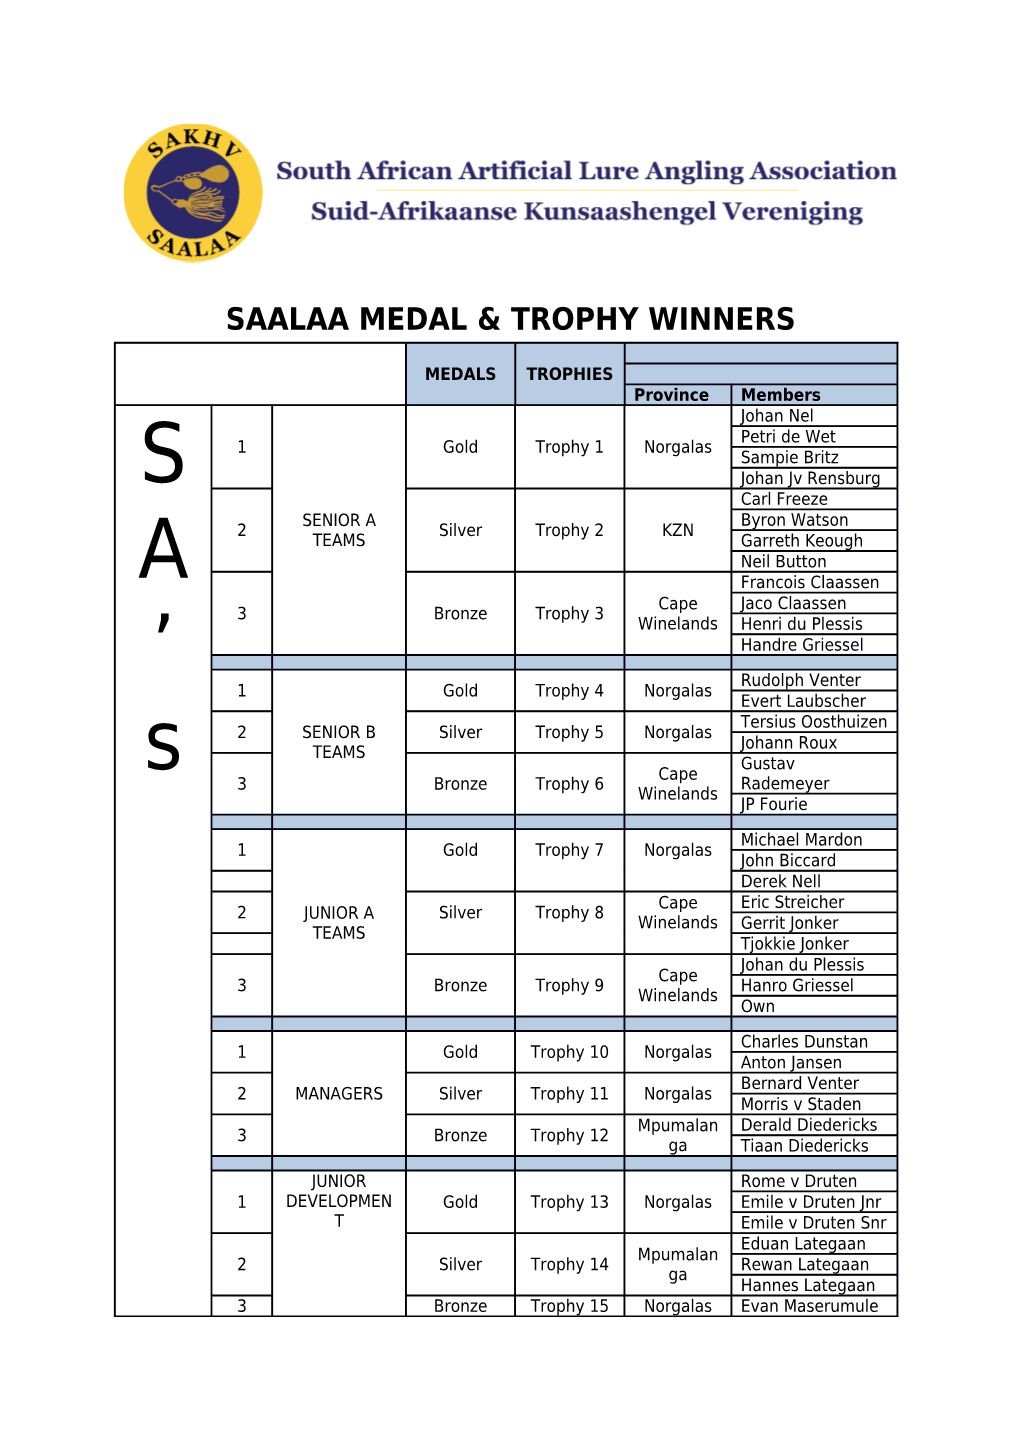 Saalaa Medal & Trophy Winners